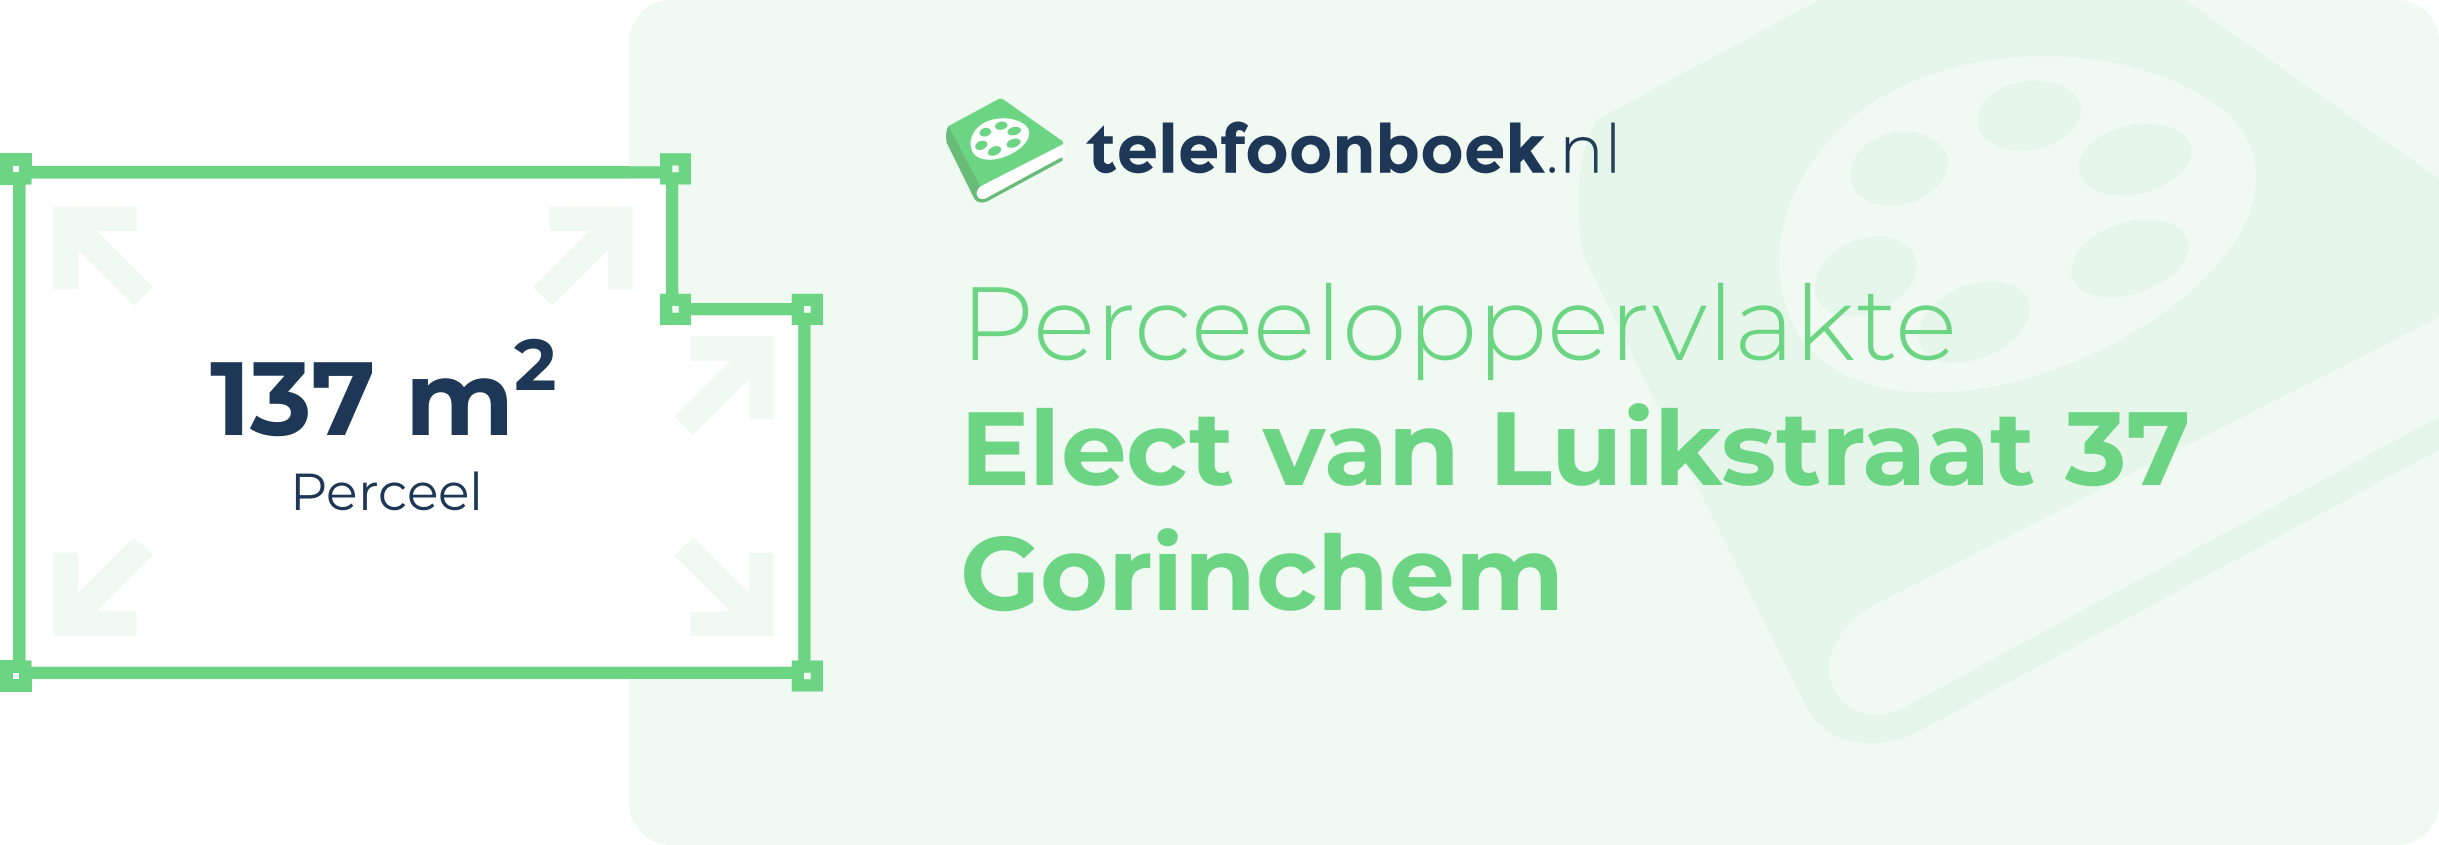 Perceeloppervlakte Elect Van Luikstraat 37 Gorinchem